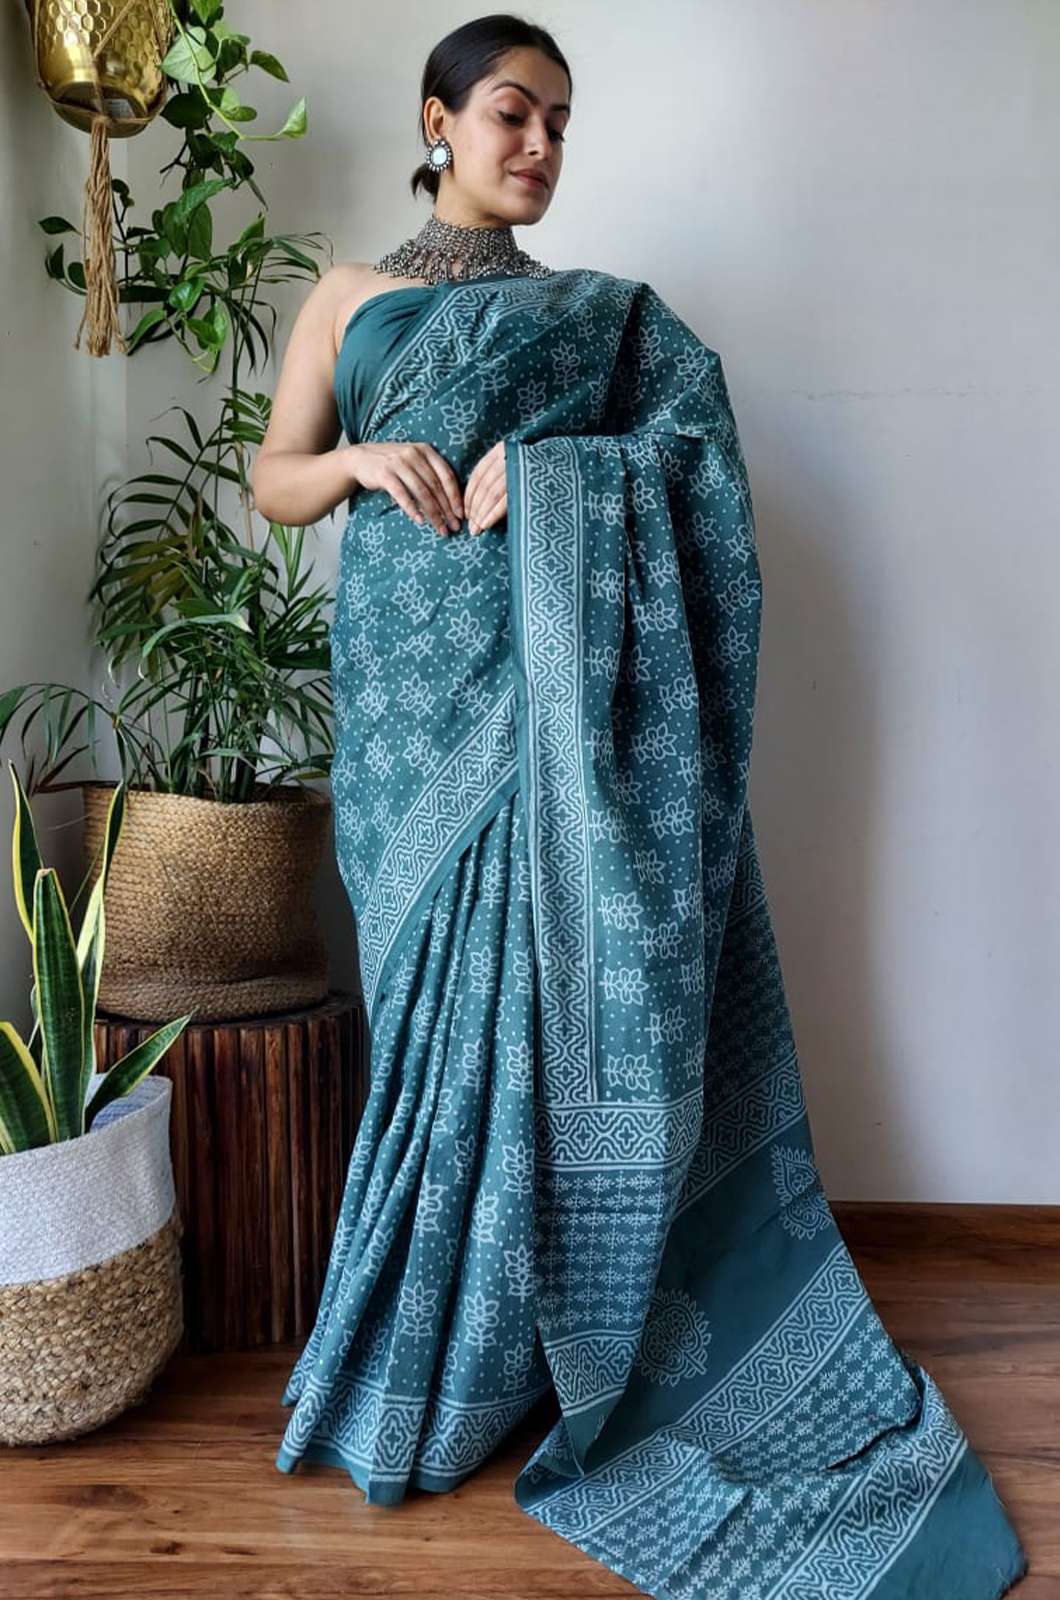 Shri Balaji Emporium 5850C Hand Block Printed Pure cotton saree